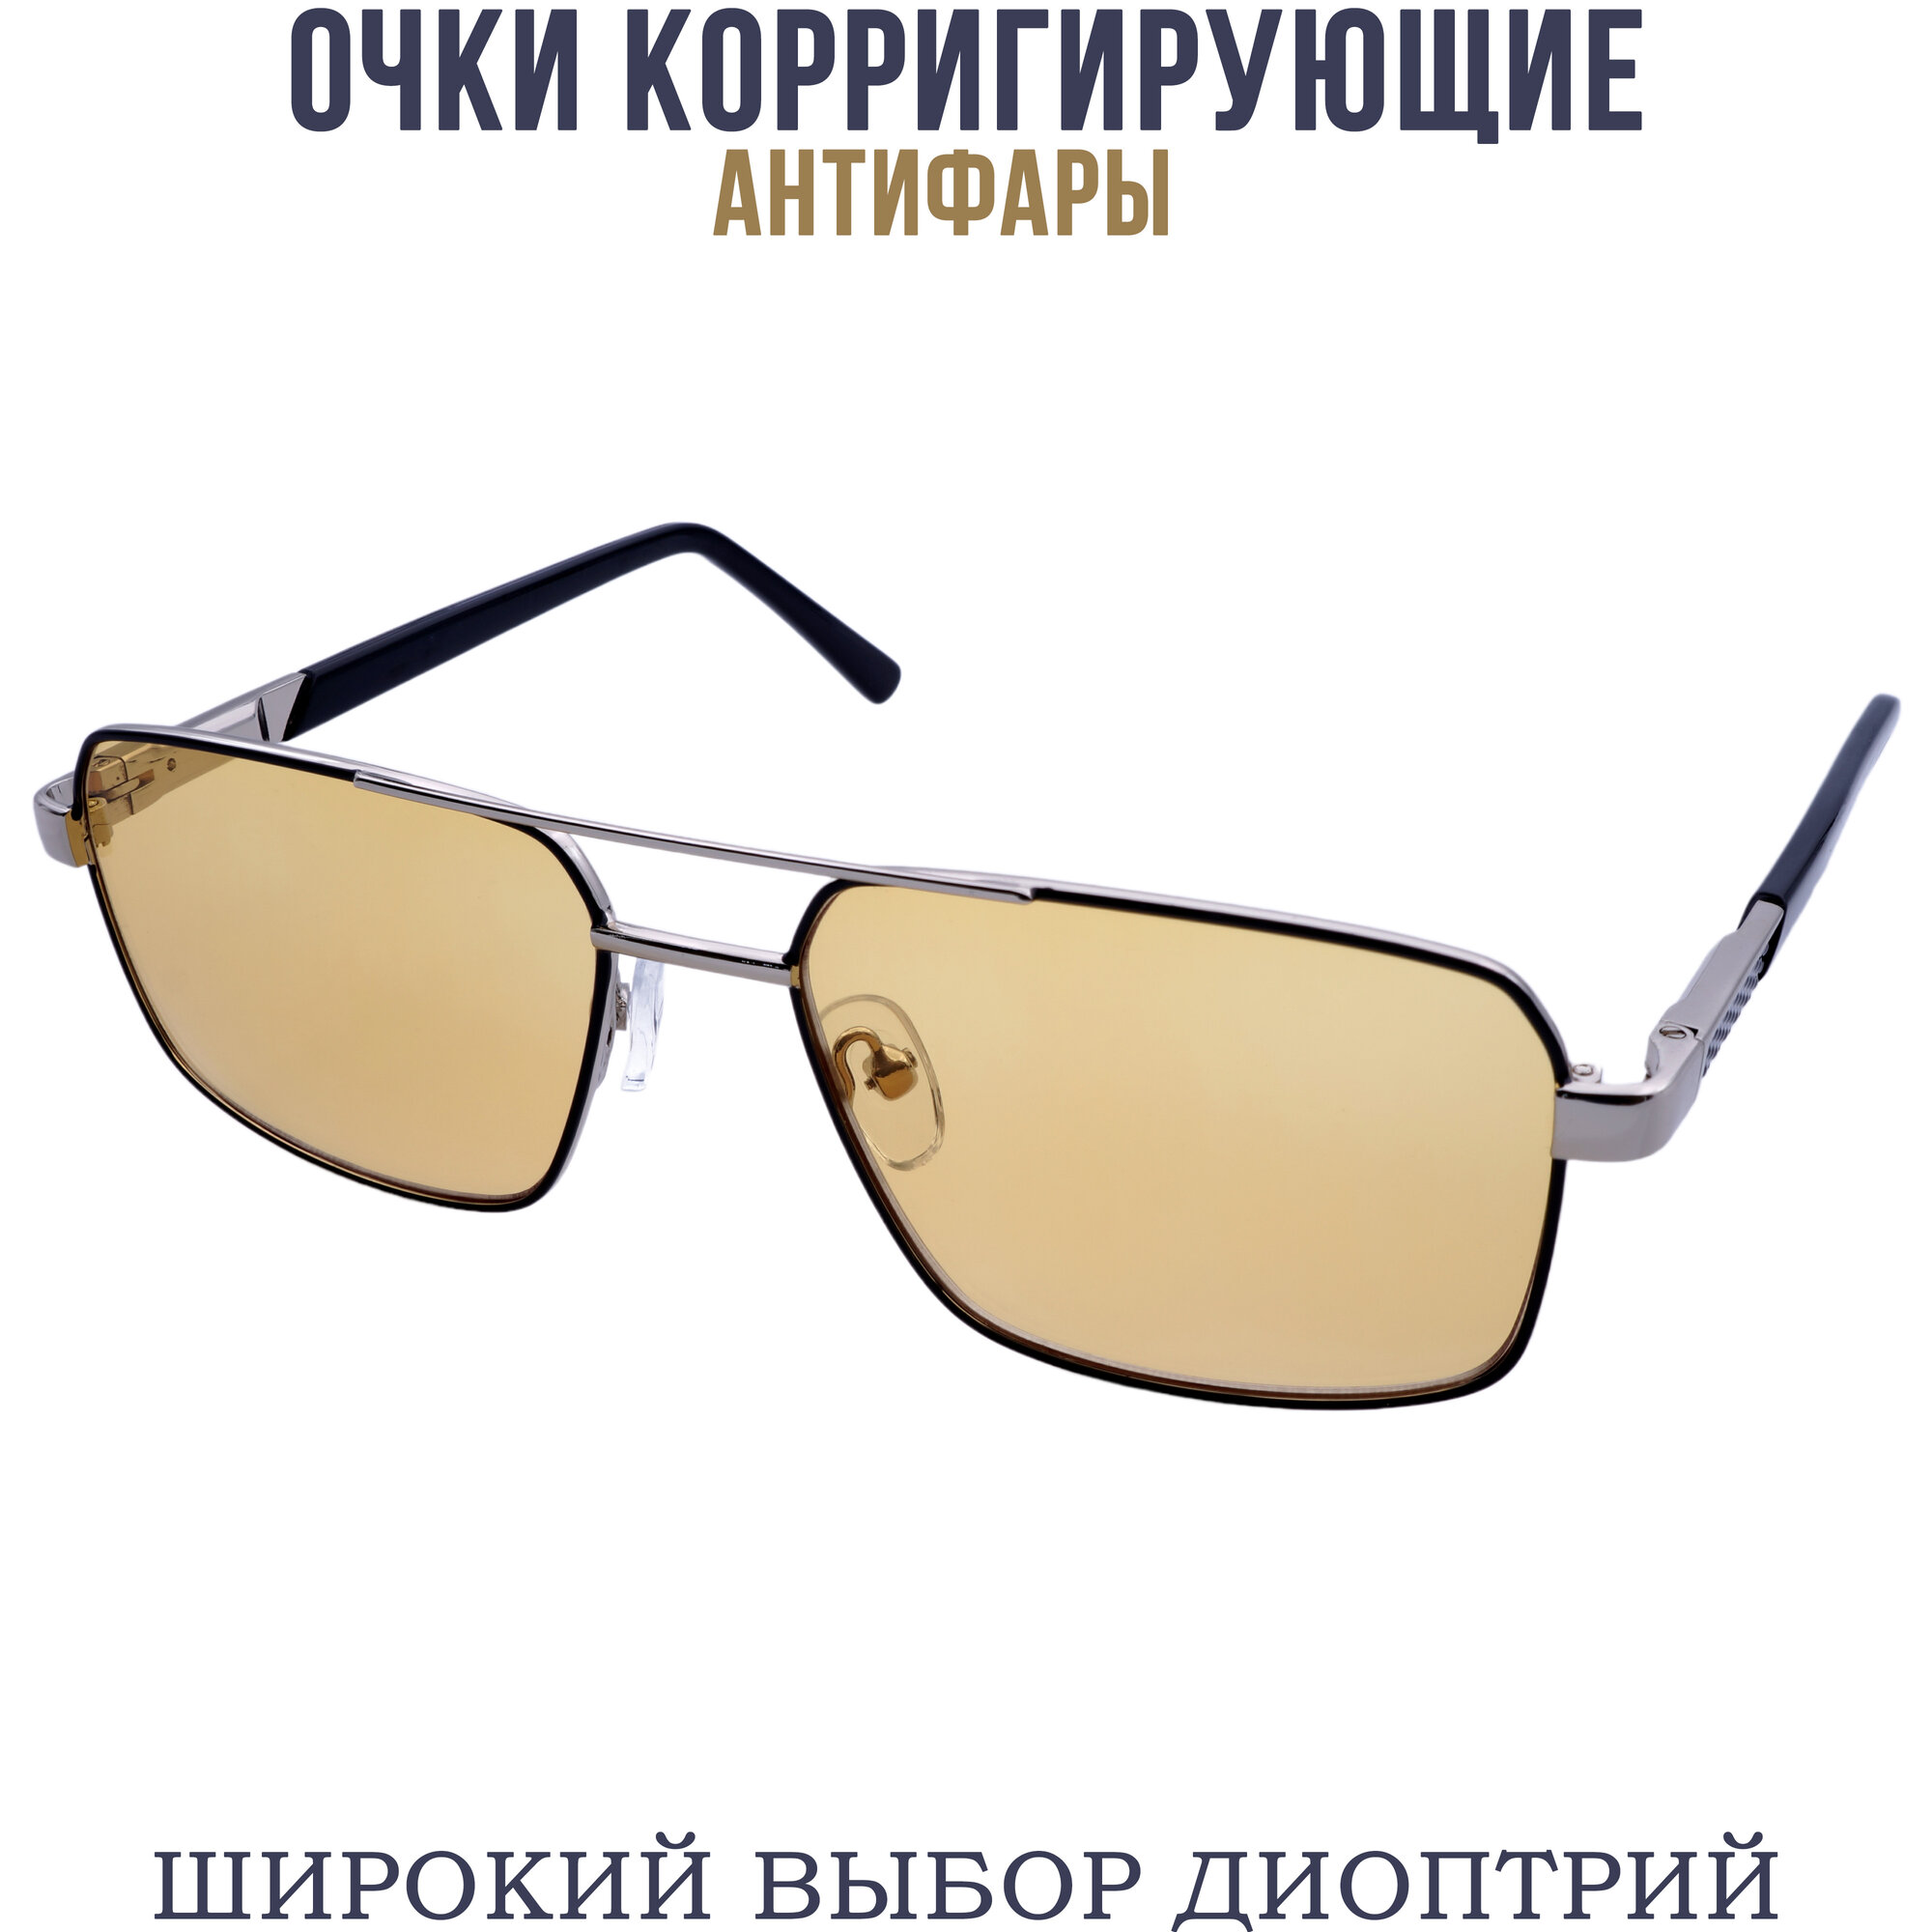 Готовые очки для зрения антифара с диоптриями pd62-64 бронзово-черный -2.50